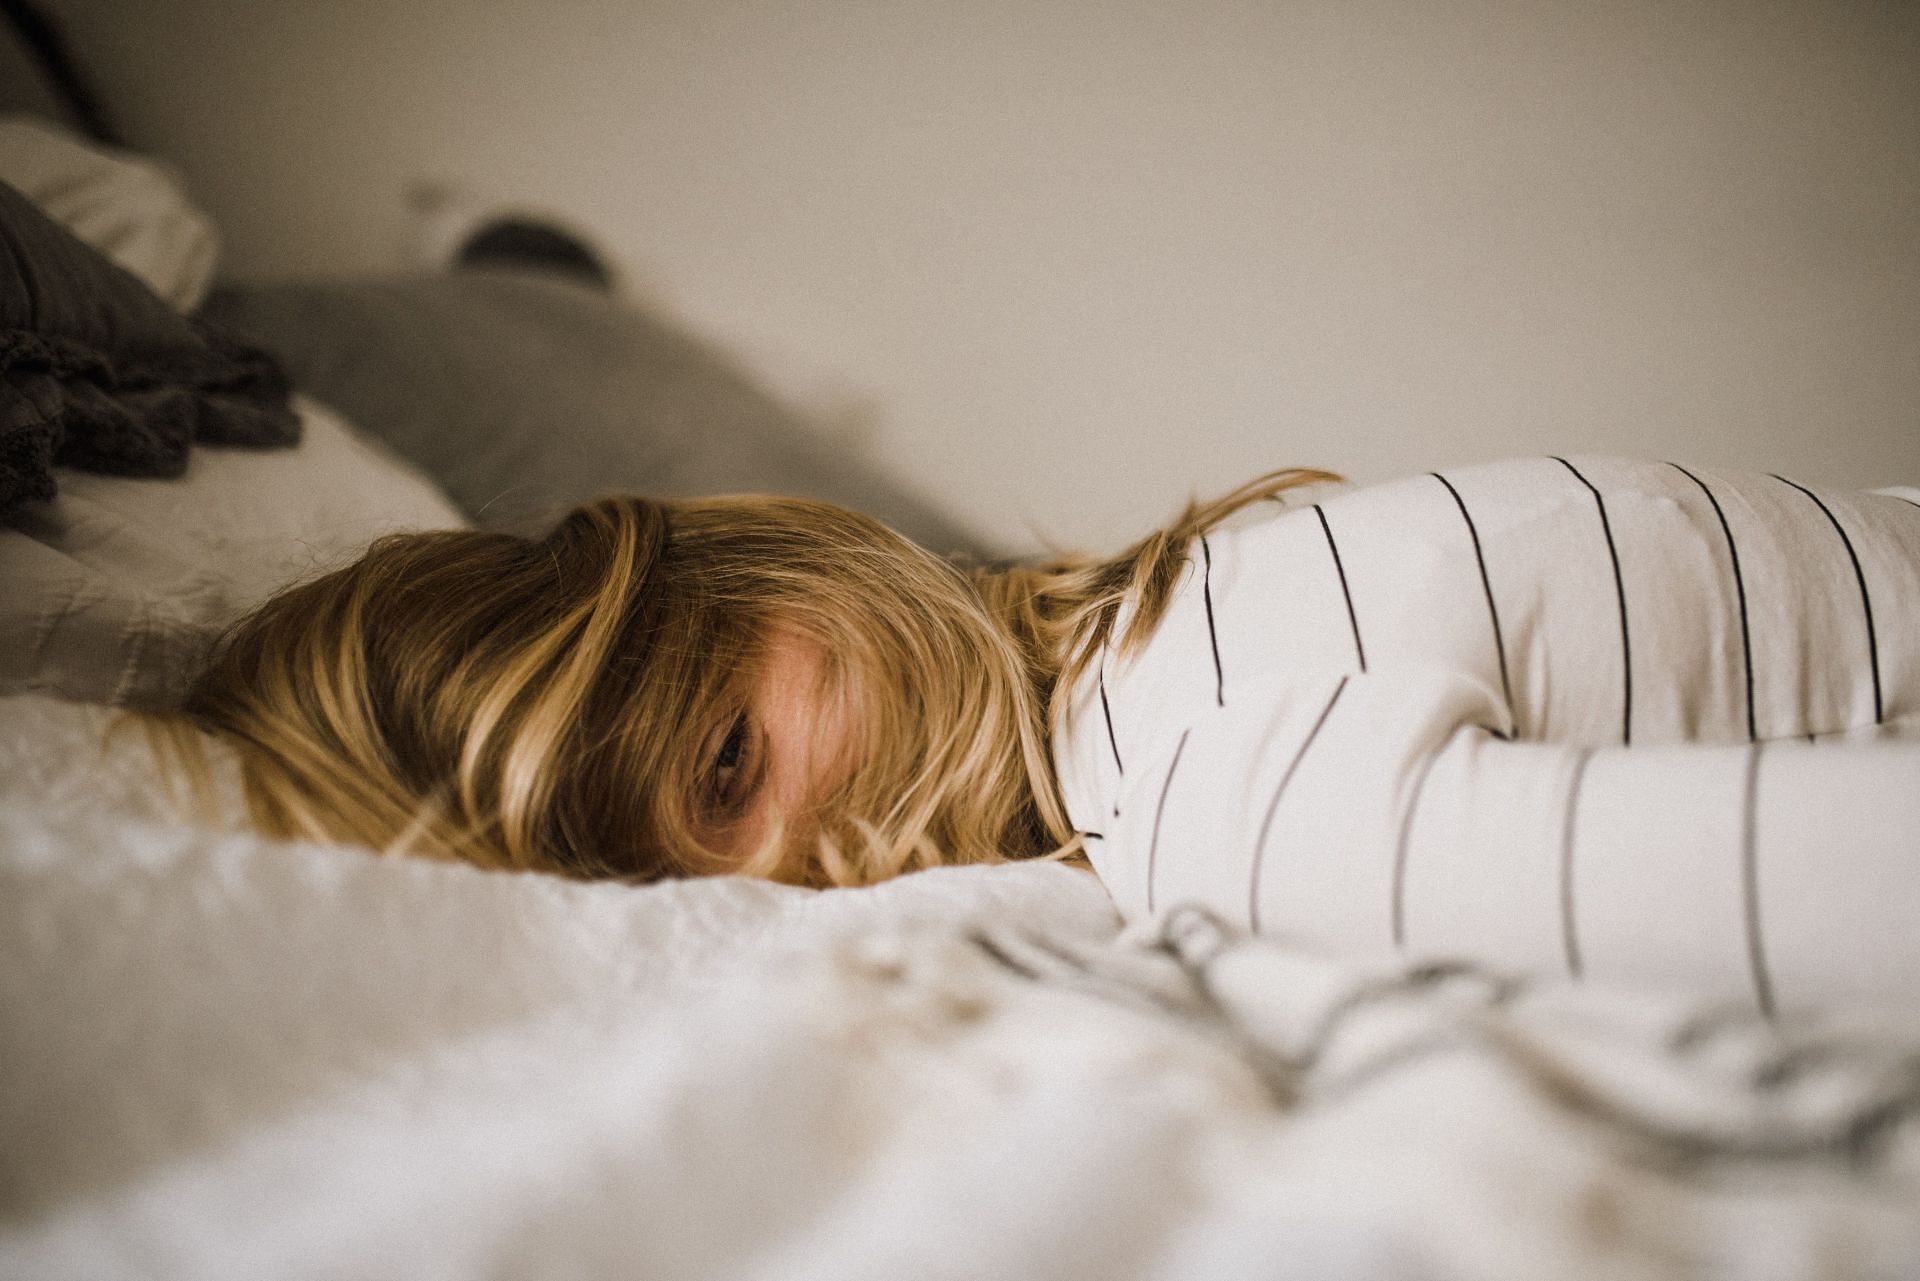 8 hours of sleep is mandatory for every adult. (Imagevia Unsplash/ Kinga howard)